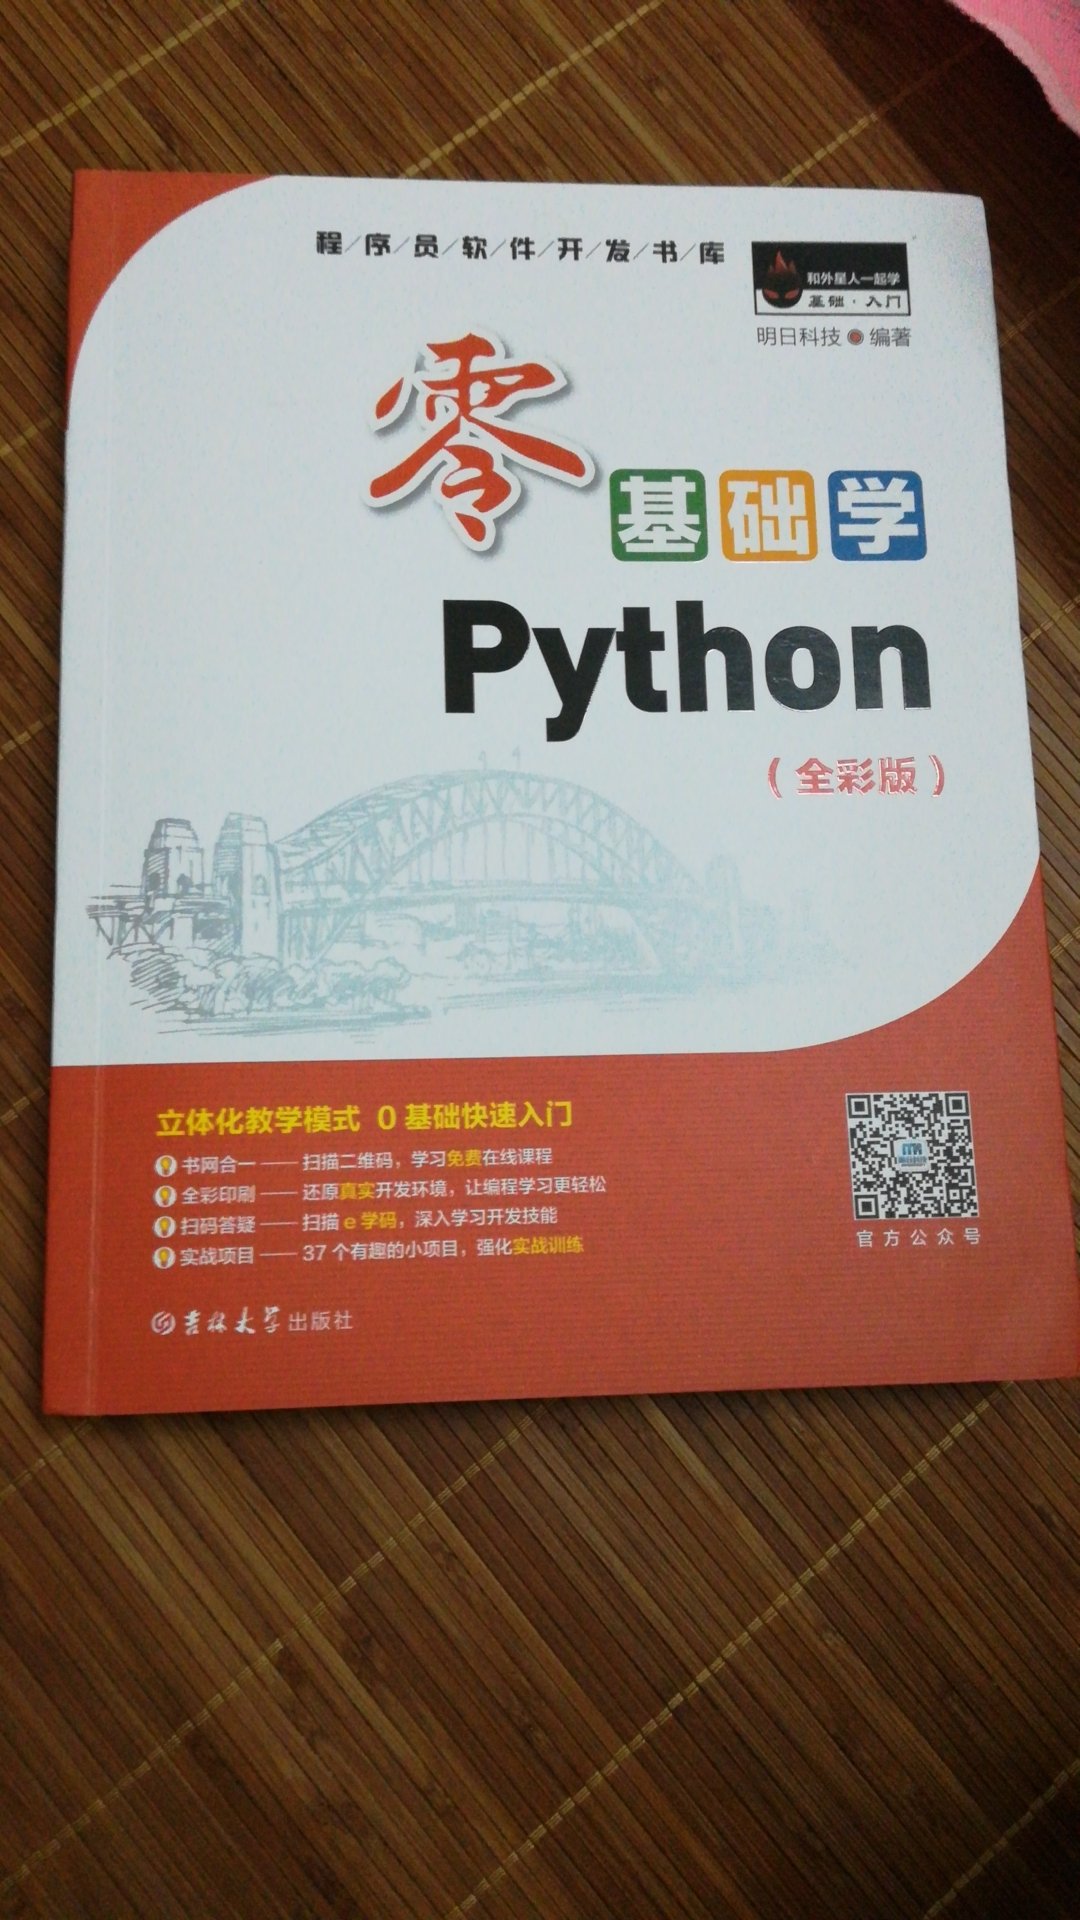 作为Python入门，还是很不错的，有视频有源码，值得入手